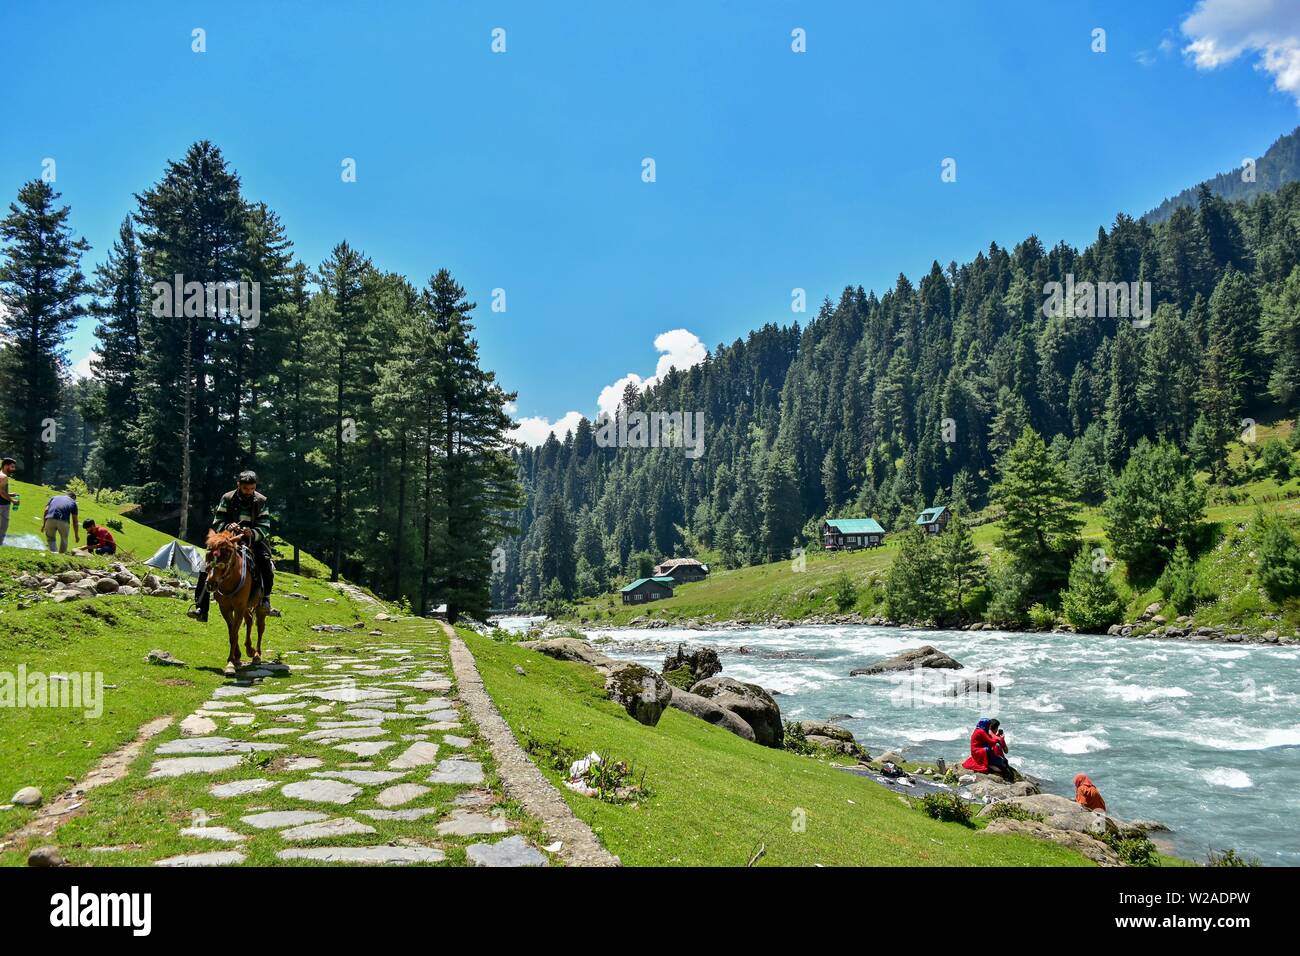 Kaschmir, Indien. 07 Juli, 2019. Ein Mann reitet ein Pferd in der Nähe des Flusses an einem sonnigen Sommertag in Pahalgam, rund 110 km südlich von Srinagar, die Hauptstadt von Jammu und Kaschmir. Das Kaschmir-tal angenehmes Wetter aufgrund häufiger vor - Monsunregen erlebt, eine Hohe von 31,5 Grad Celsius am Sonntag aufgezeichnet. Der Wetterfrosch hat vor allem trockenes Wetter während der nächsten 24 Stunden prognostiziert. Credit: ZUMA Press, Inc./Alamy leben Nachrichten Stockfoto